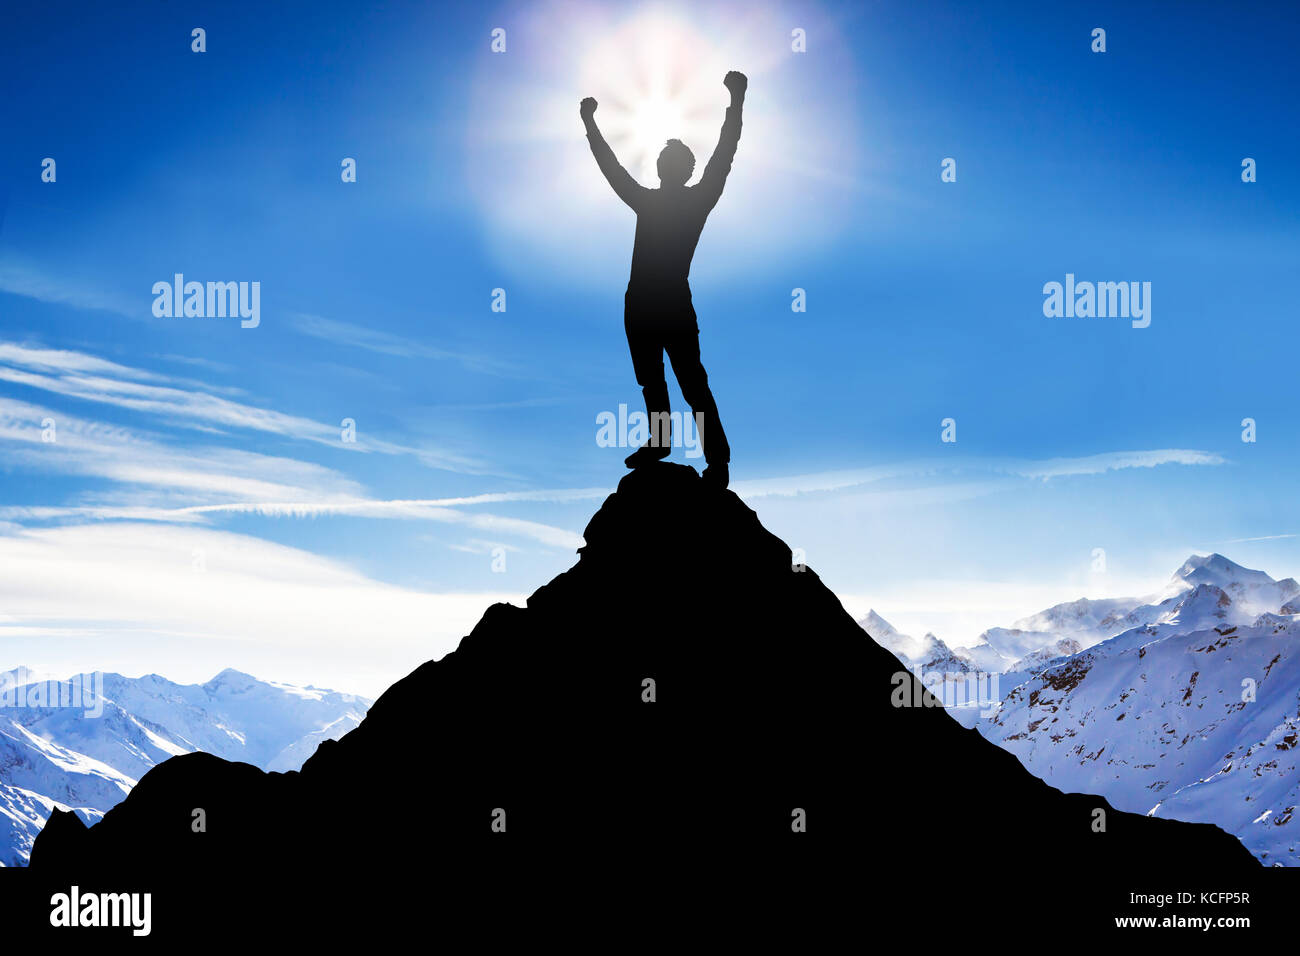 Silhouette d'un homme après avoir réussi l'escalade contre les montagnes enneigées Banque D'Images